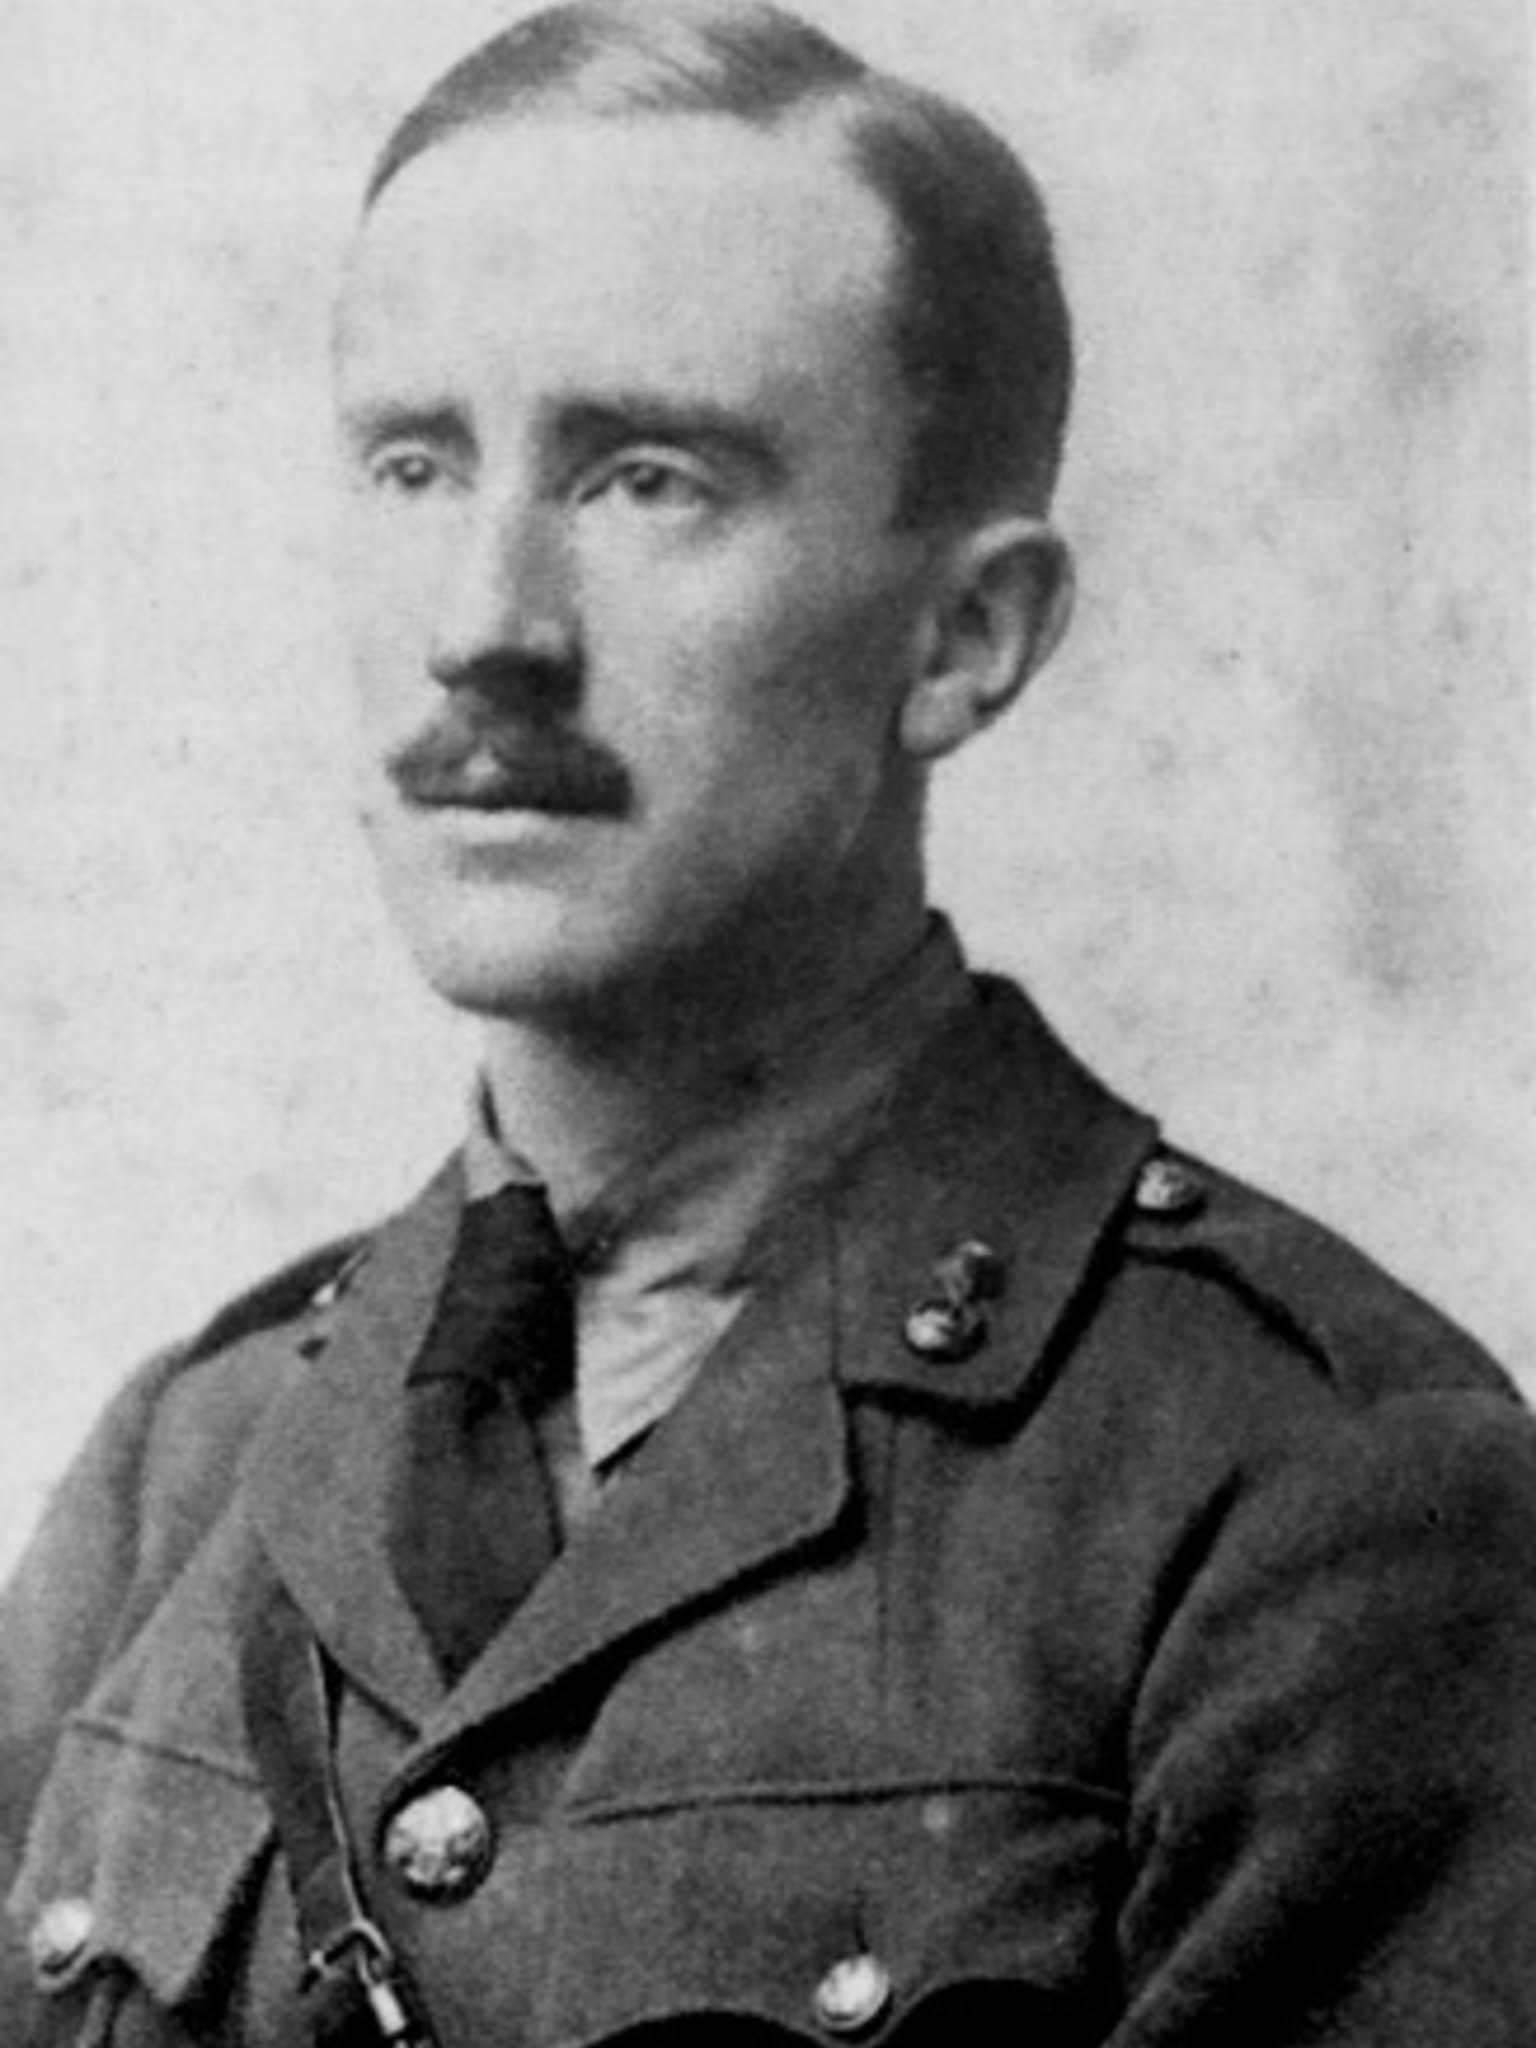 JRR Tolkien in uniform in 1916